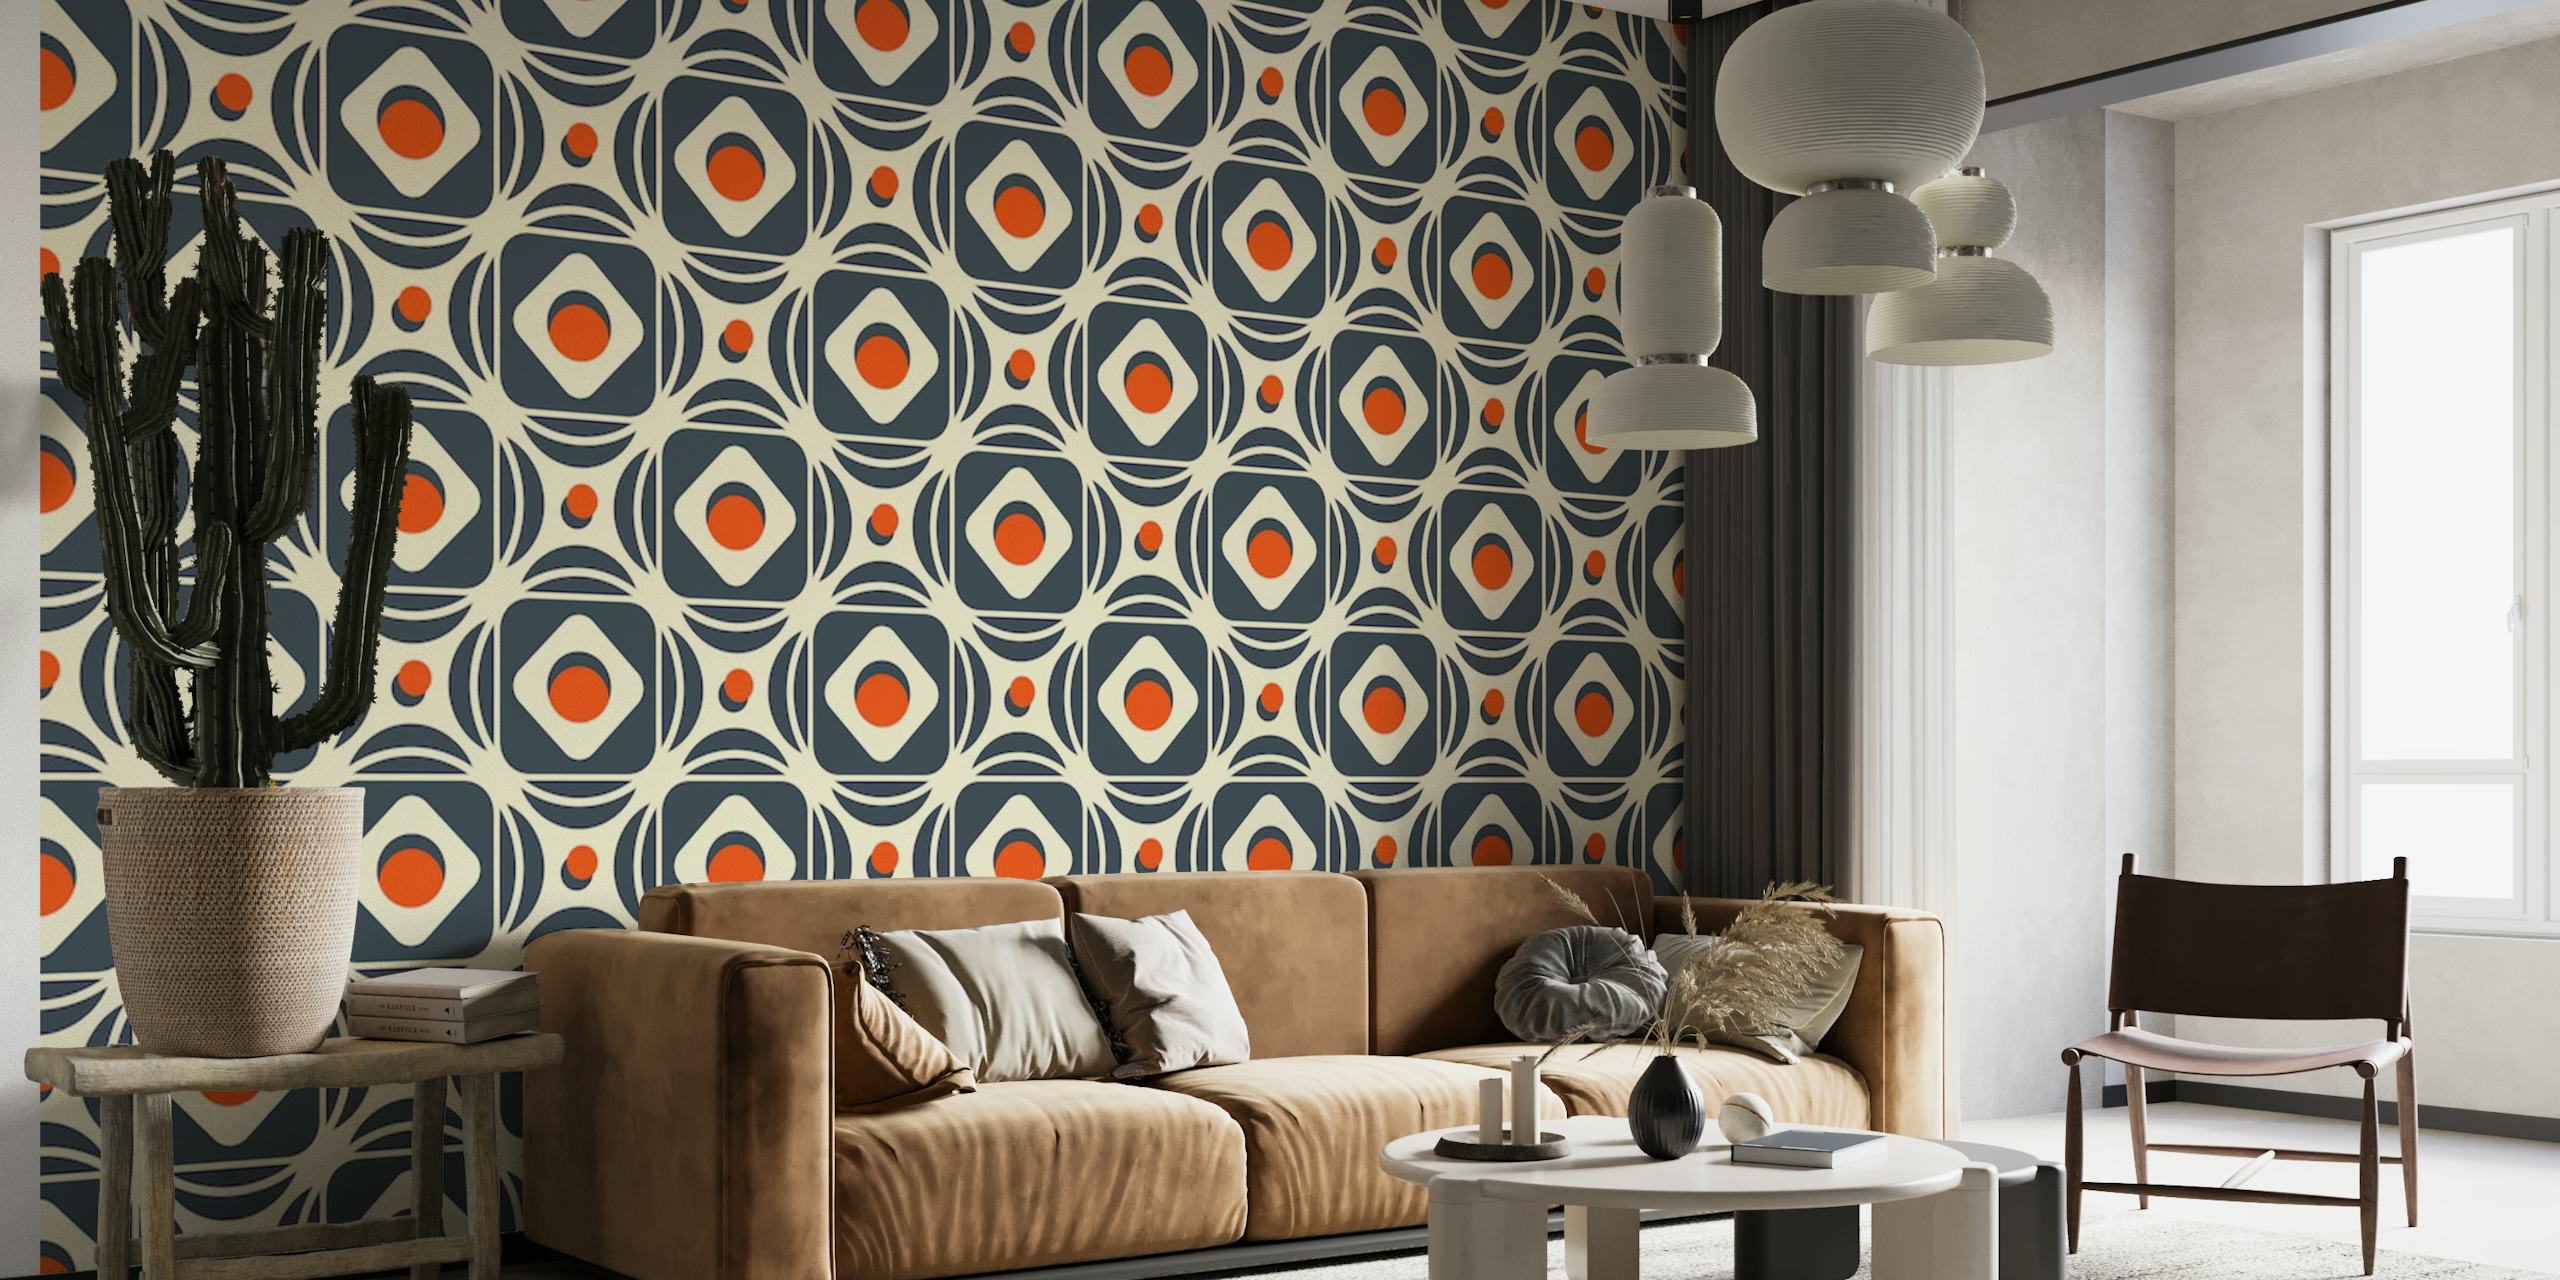 2184 Abstraktes geometrisches Wandbild mit einem komplexen Muster aus Formen und kontrastierenden Farben